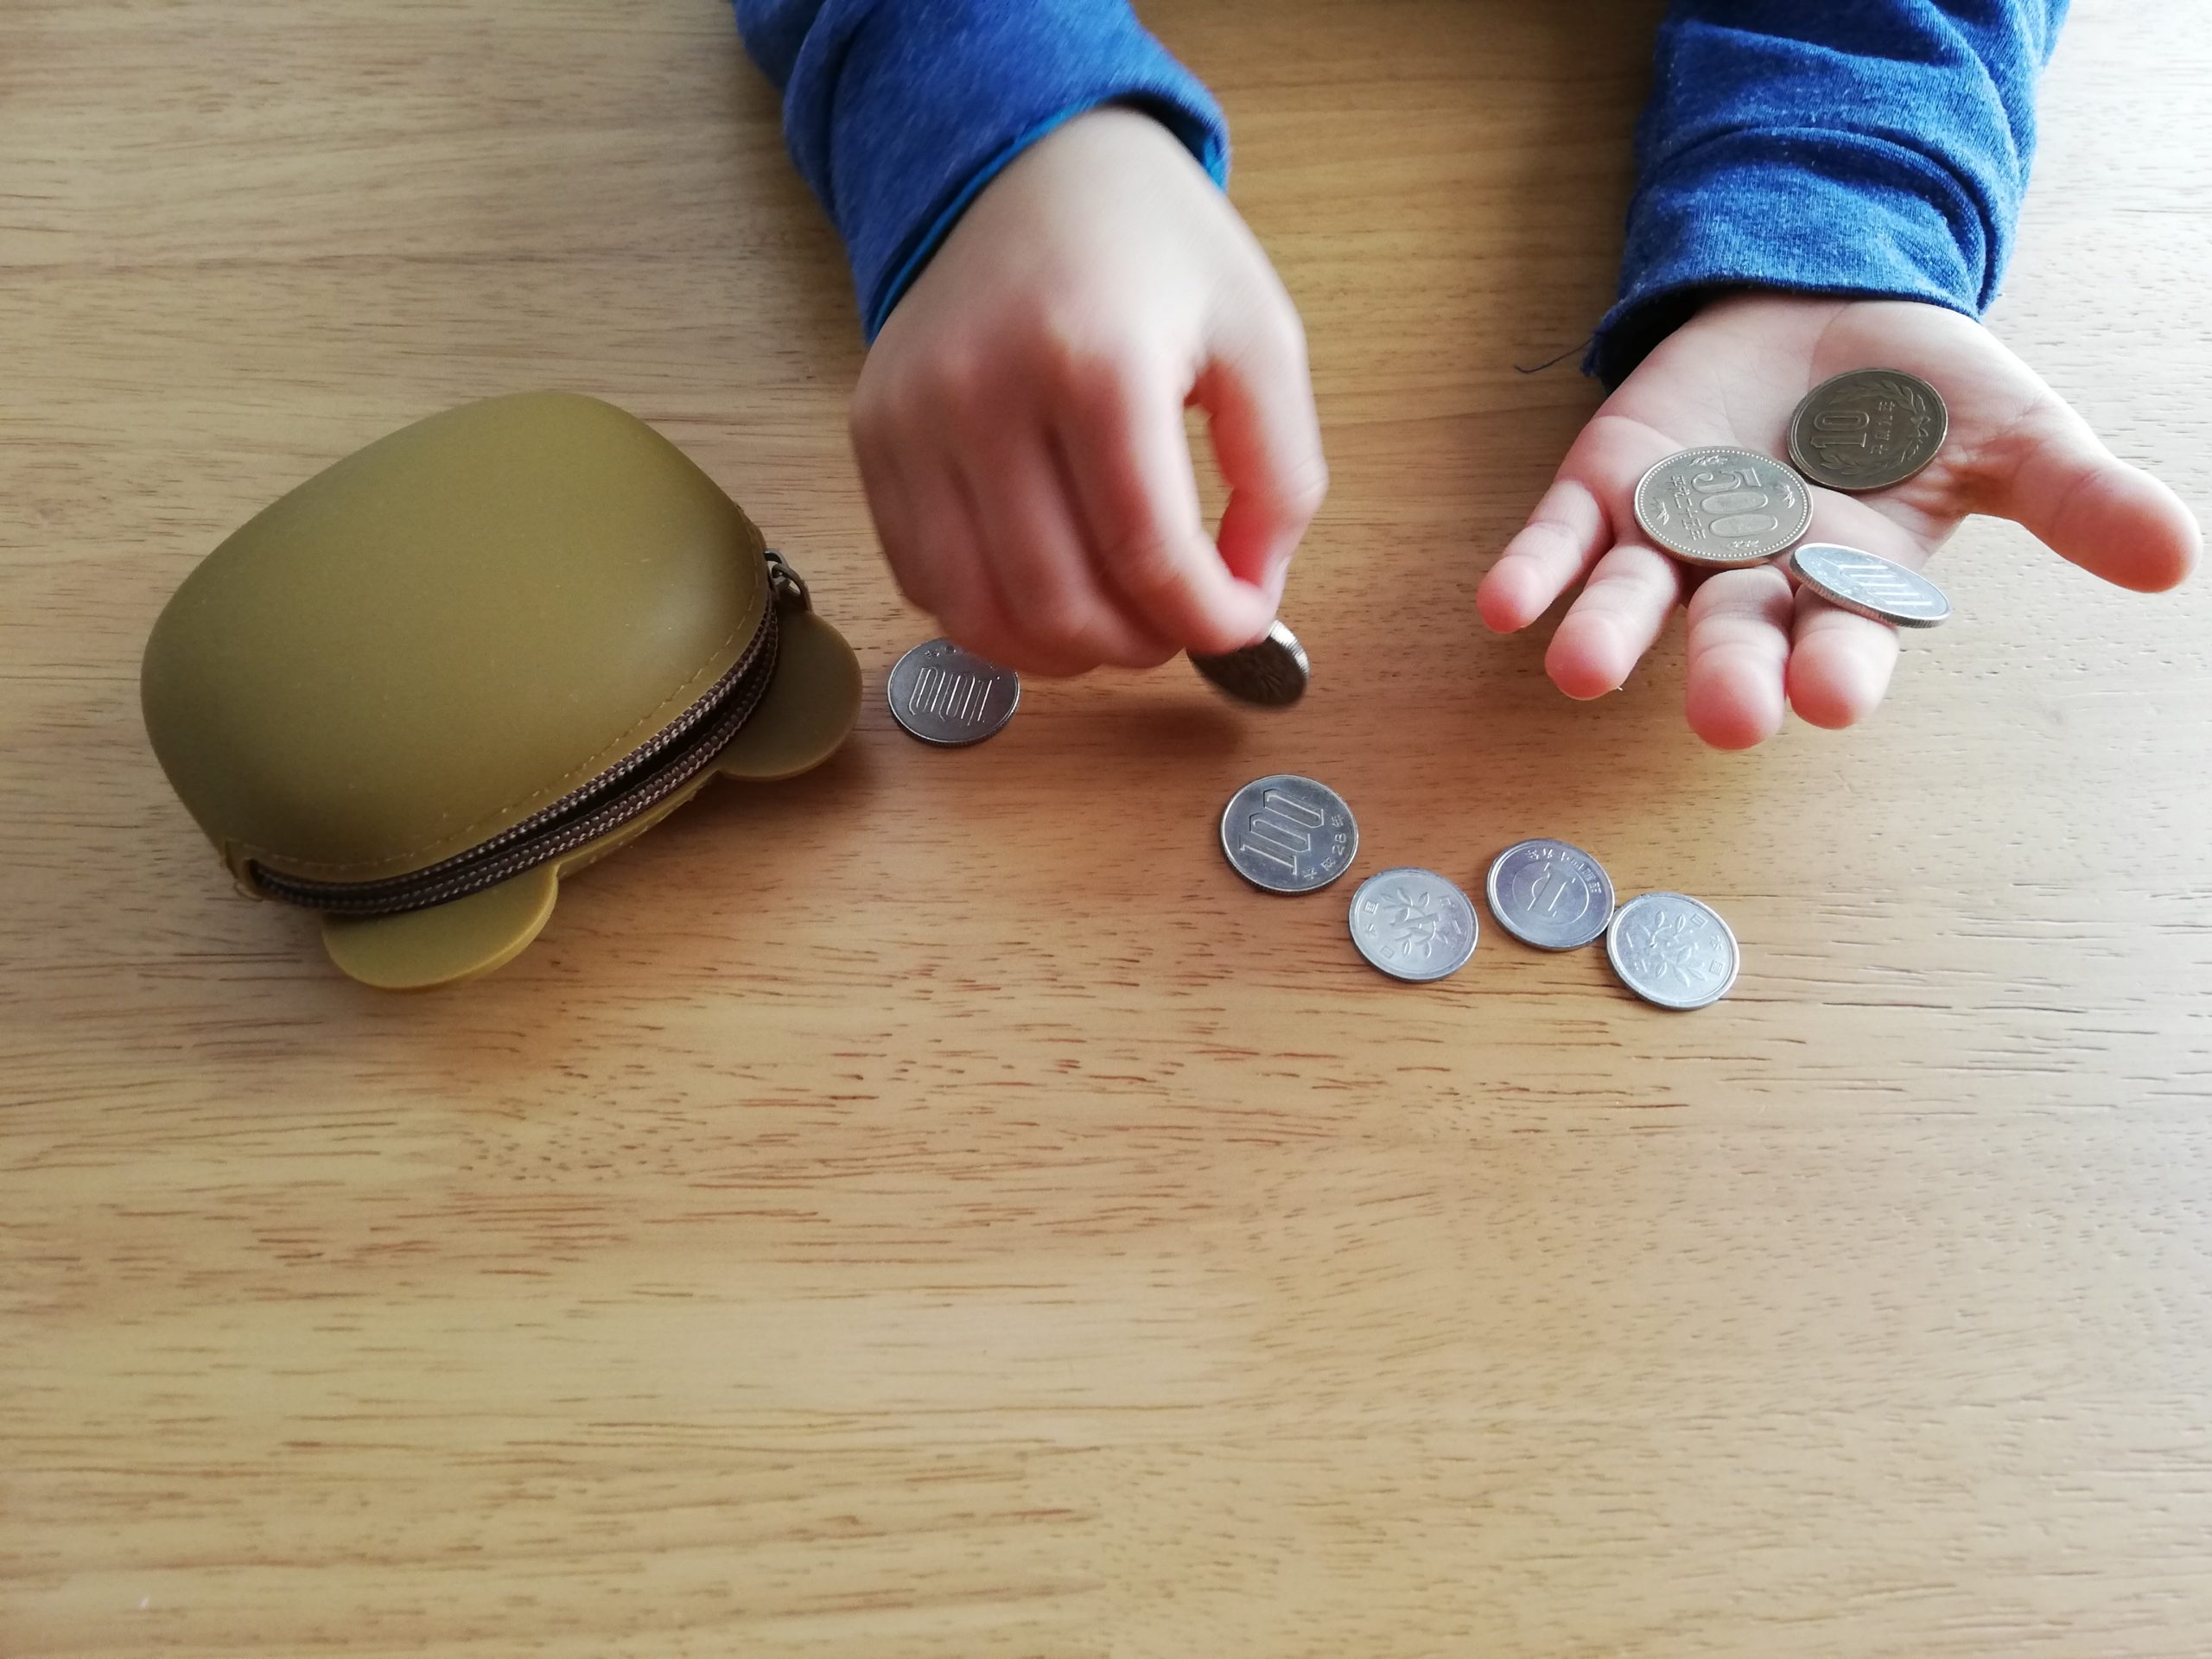 お財布からお金を盗む子供の対処法 オンラインカウンセリング ボイス